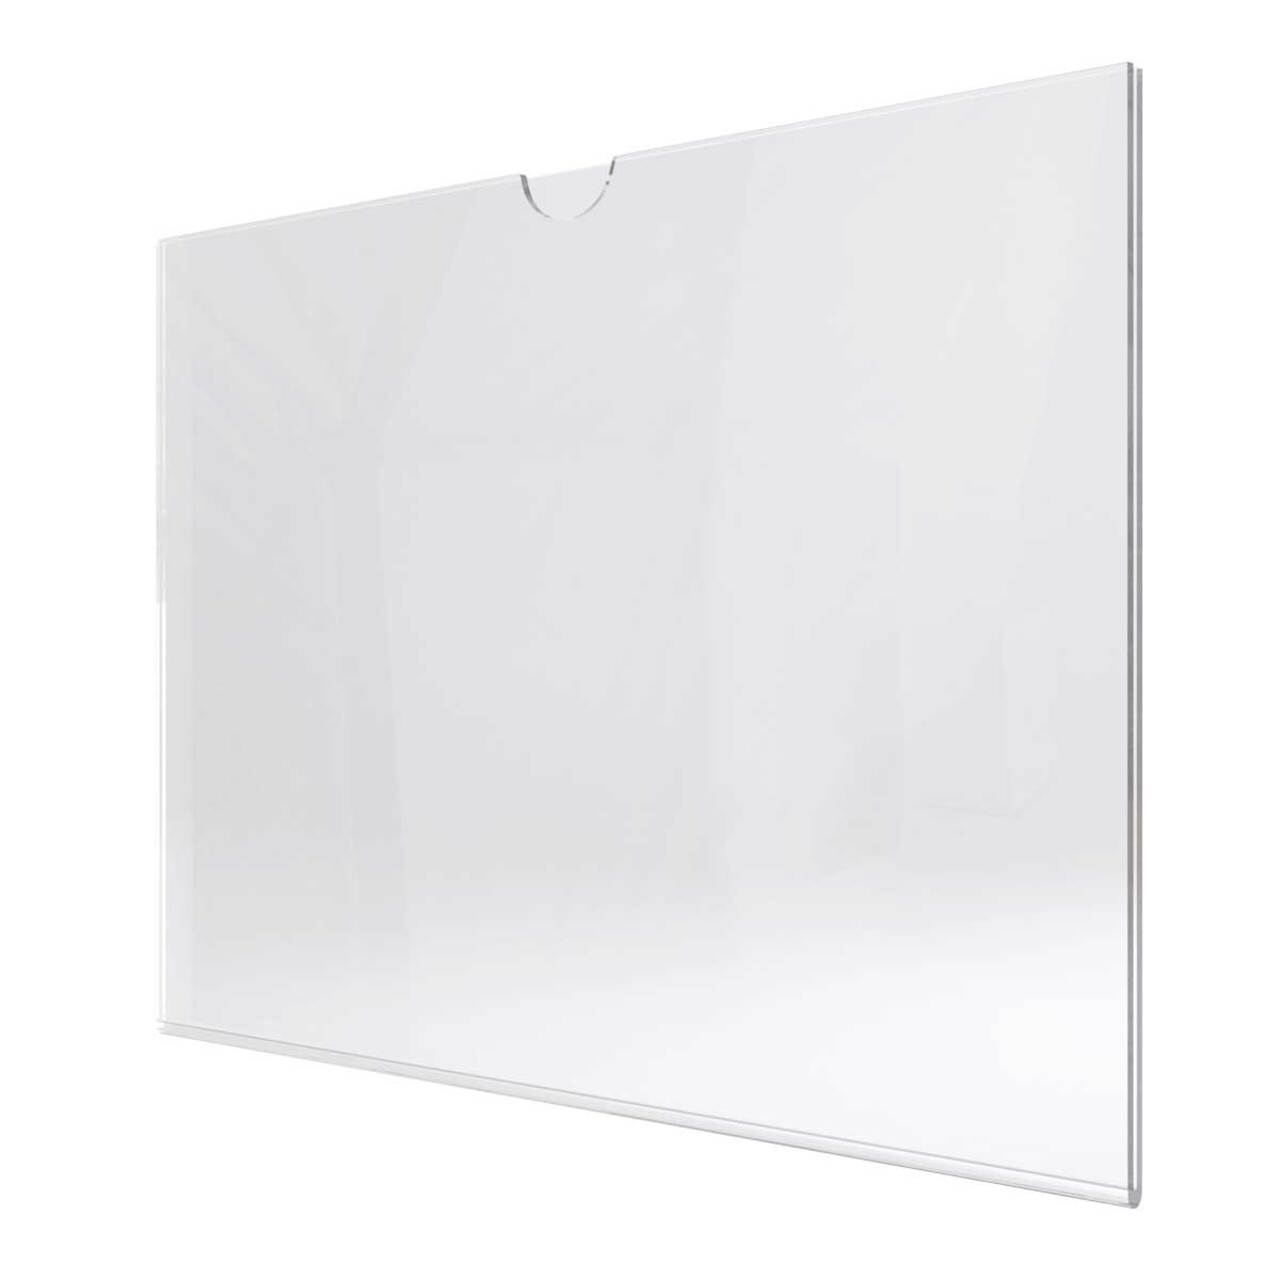 Insert tip U, din plexiglas transparent A3, JJ DISPLAYS, 297 x 420 mm, Landscape